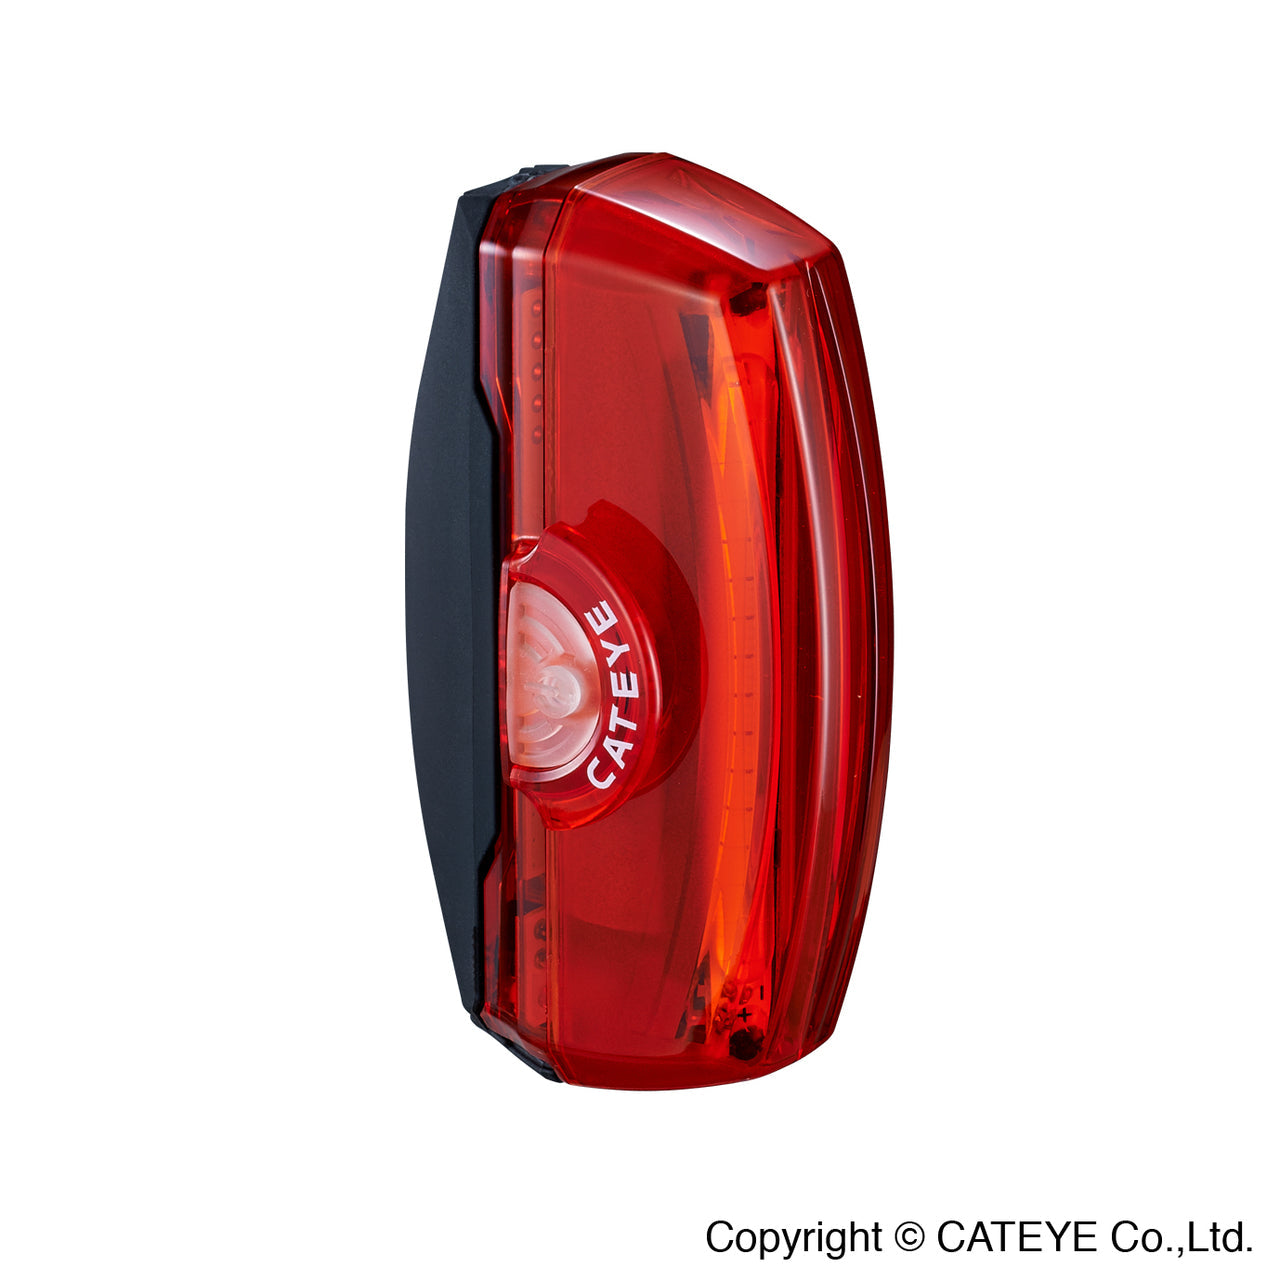 CATEYE RAPID X3 USB 尾燈~TL-LD720-R / CATEYE RAPID X3 TAIL LIGHT~TL-LD720-R